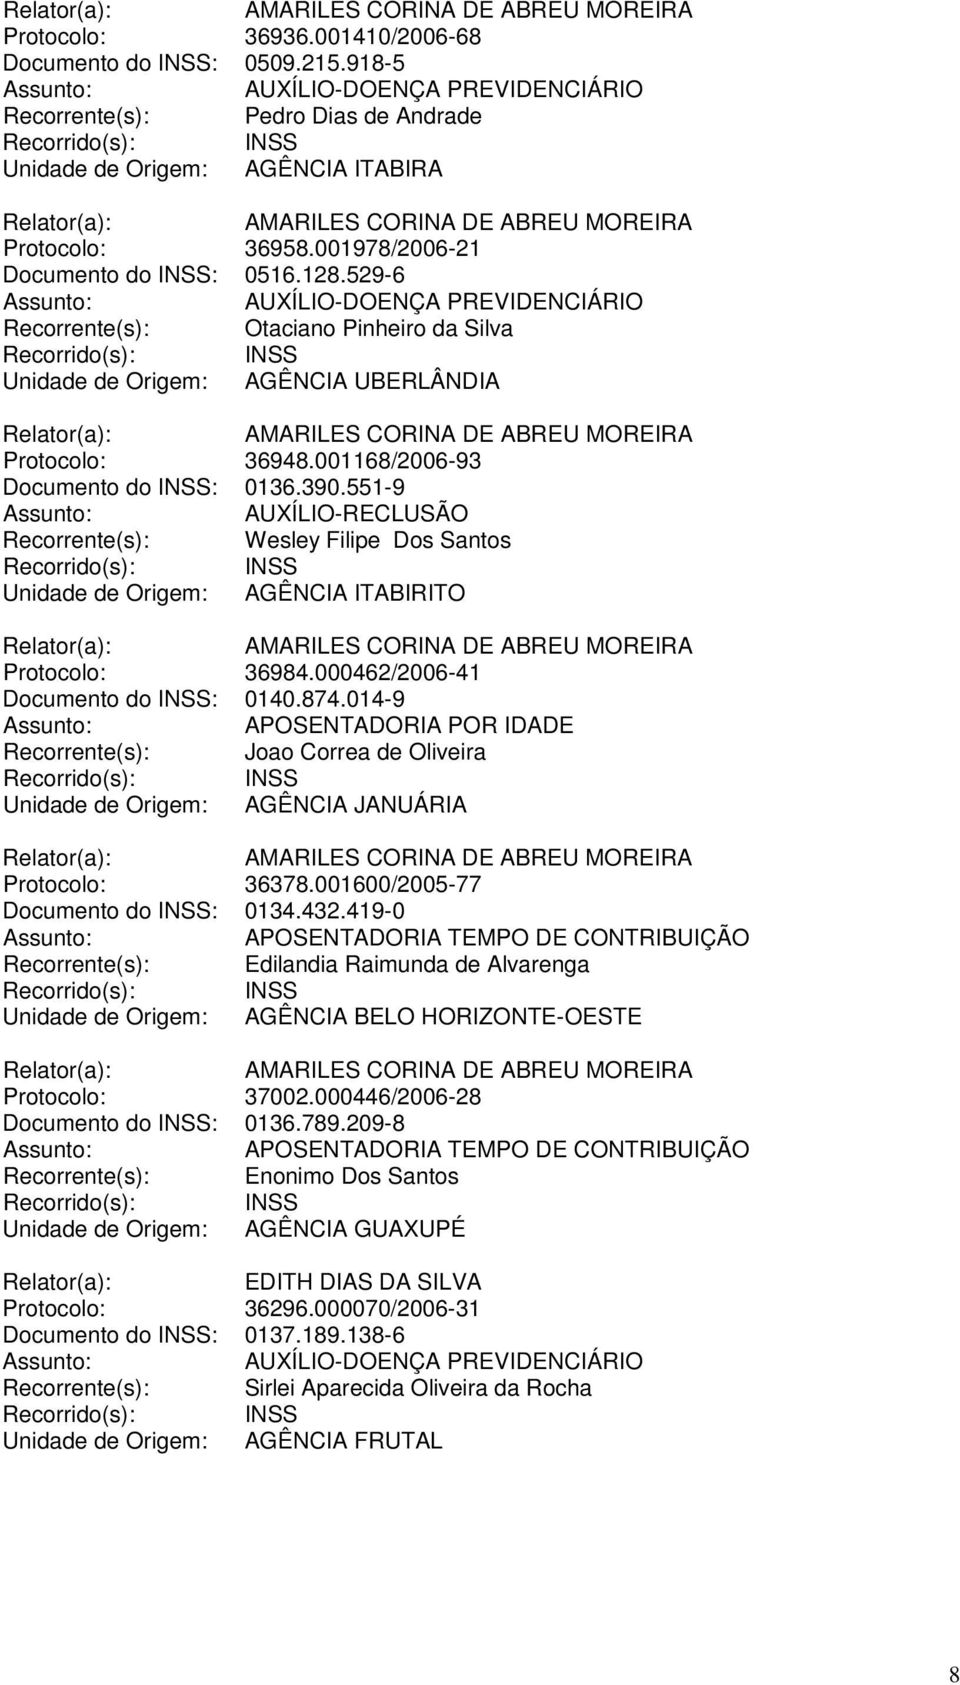 529-6 Recorrente(s): Otaciano Pinheiro da Silva Unidade de Origem: AGÊNCIA UBERLÂNDIA AMARILES CORINA DE ABREU MOREIRA Protocolo: 36948.001168/2006-93 Documento do INSS: 0136.390.